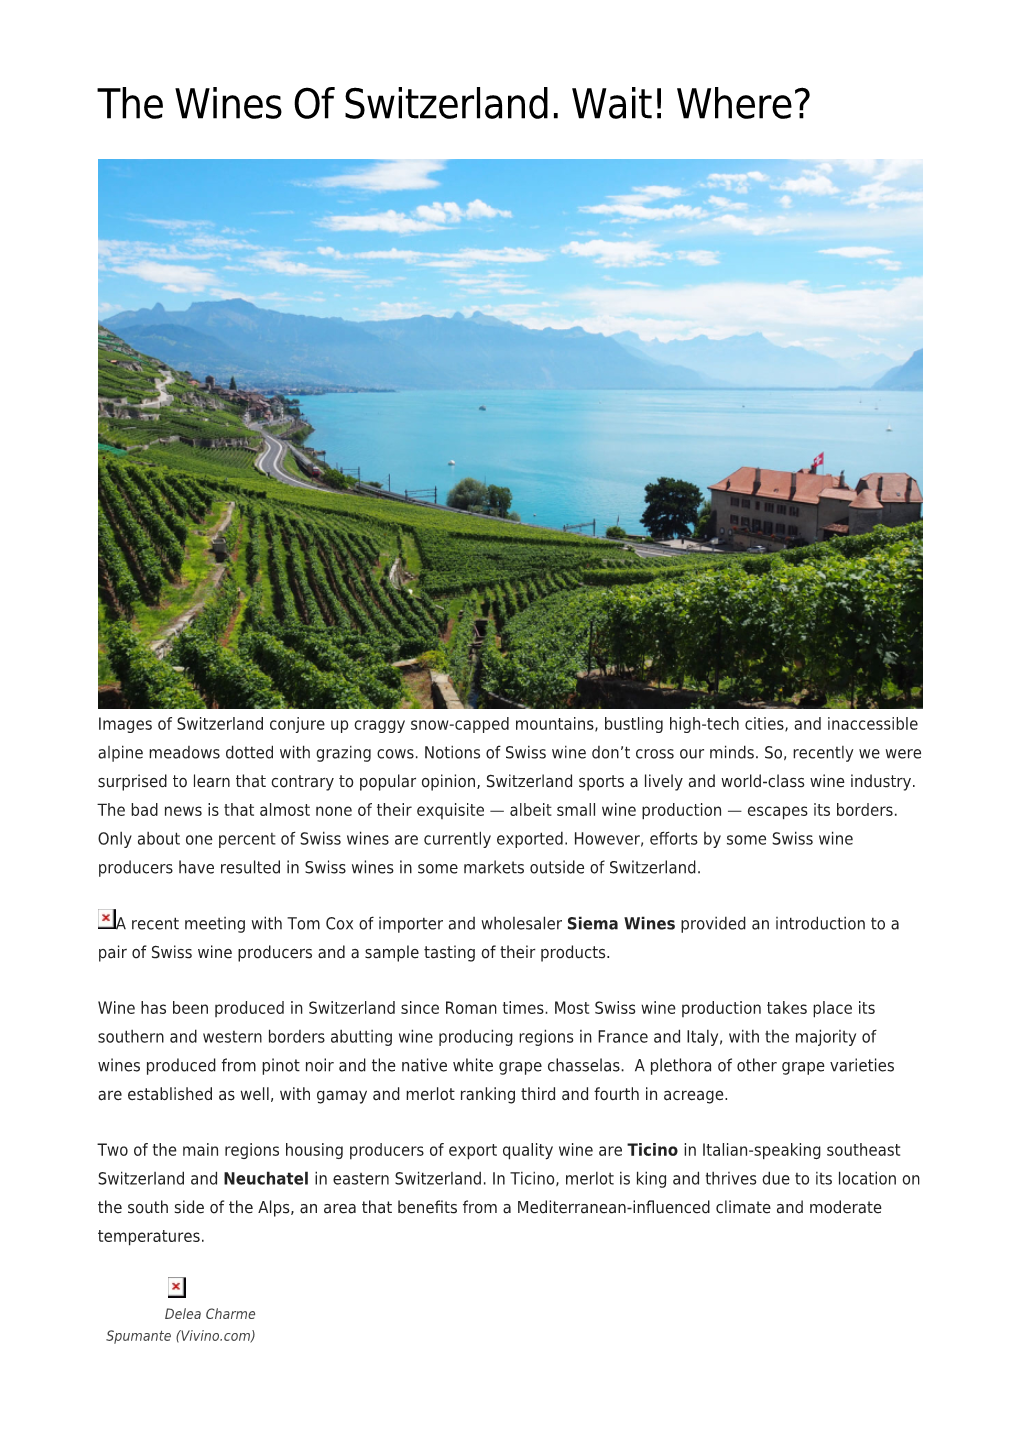 The Wines of Switzerland. Wait! Where?